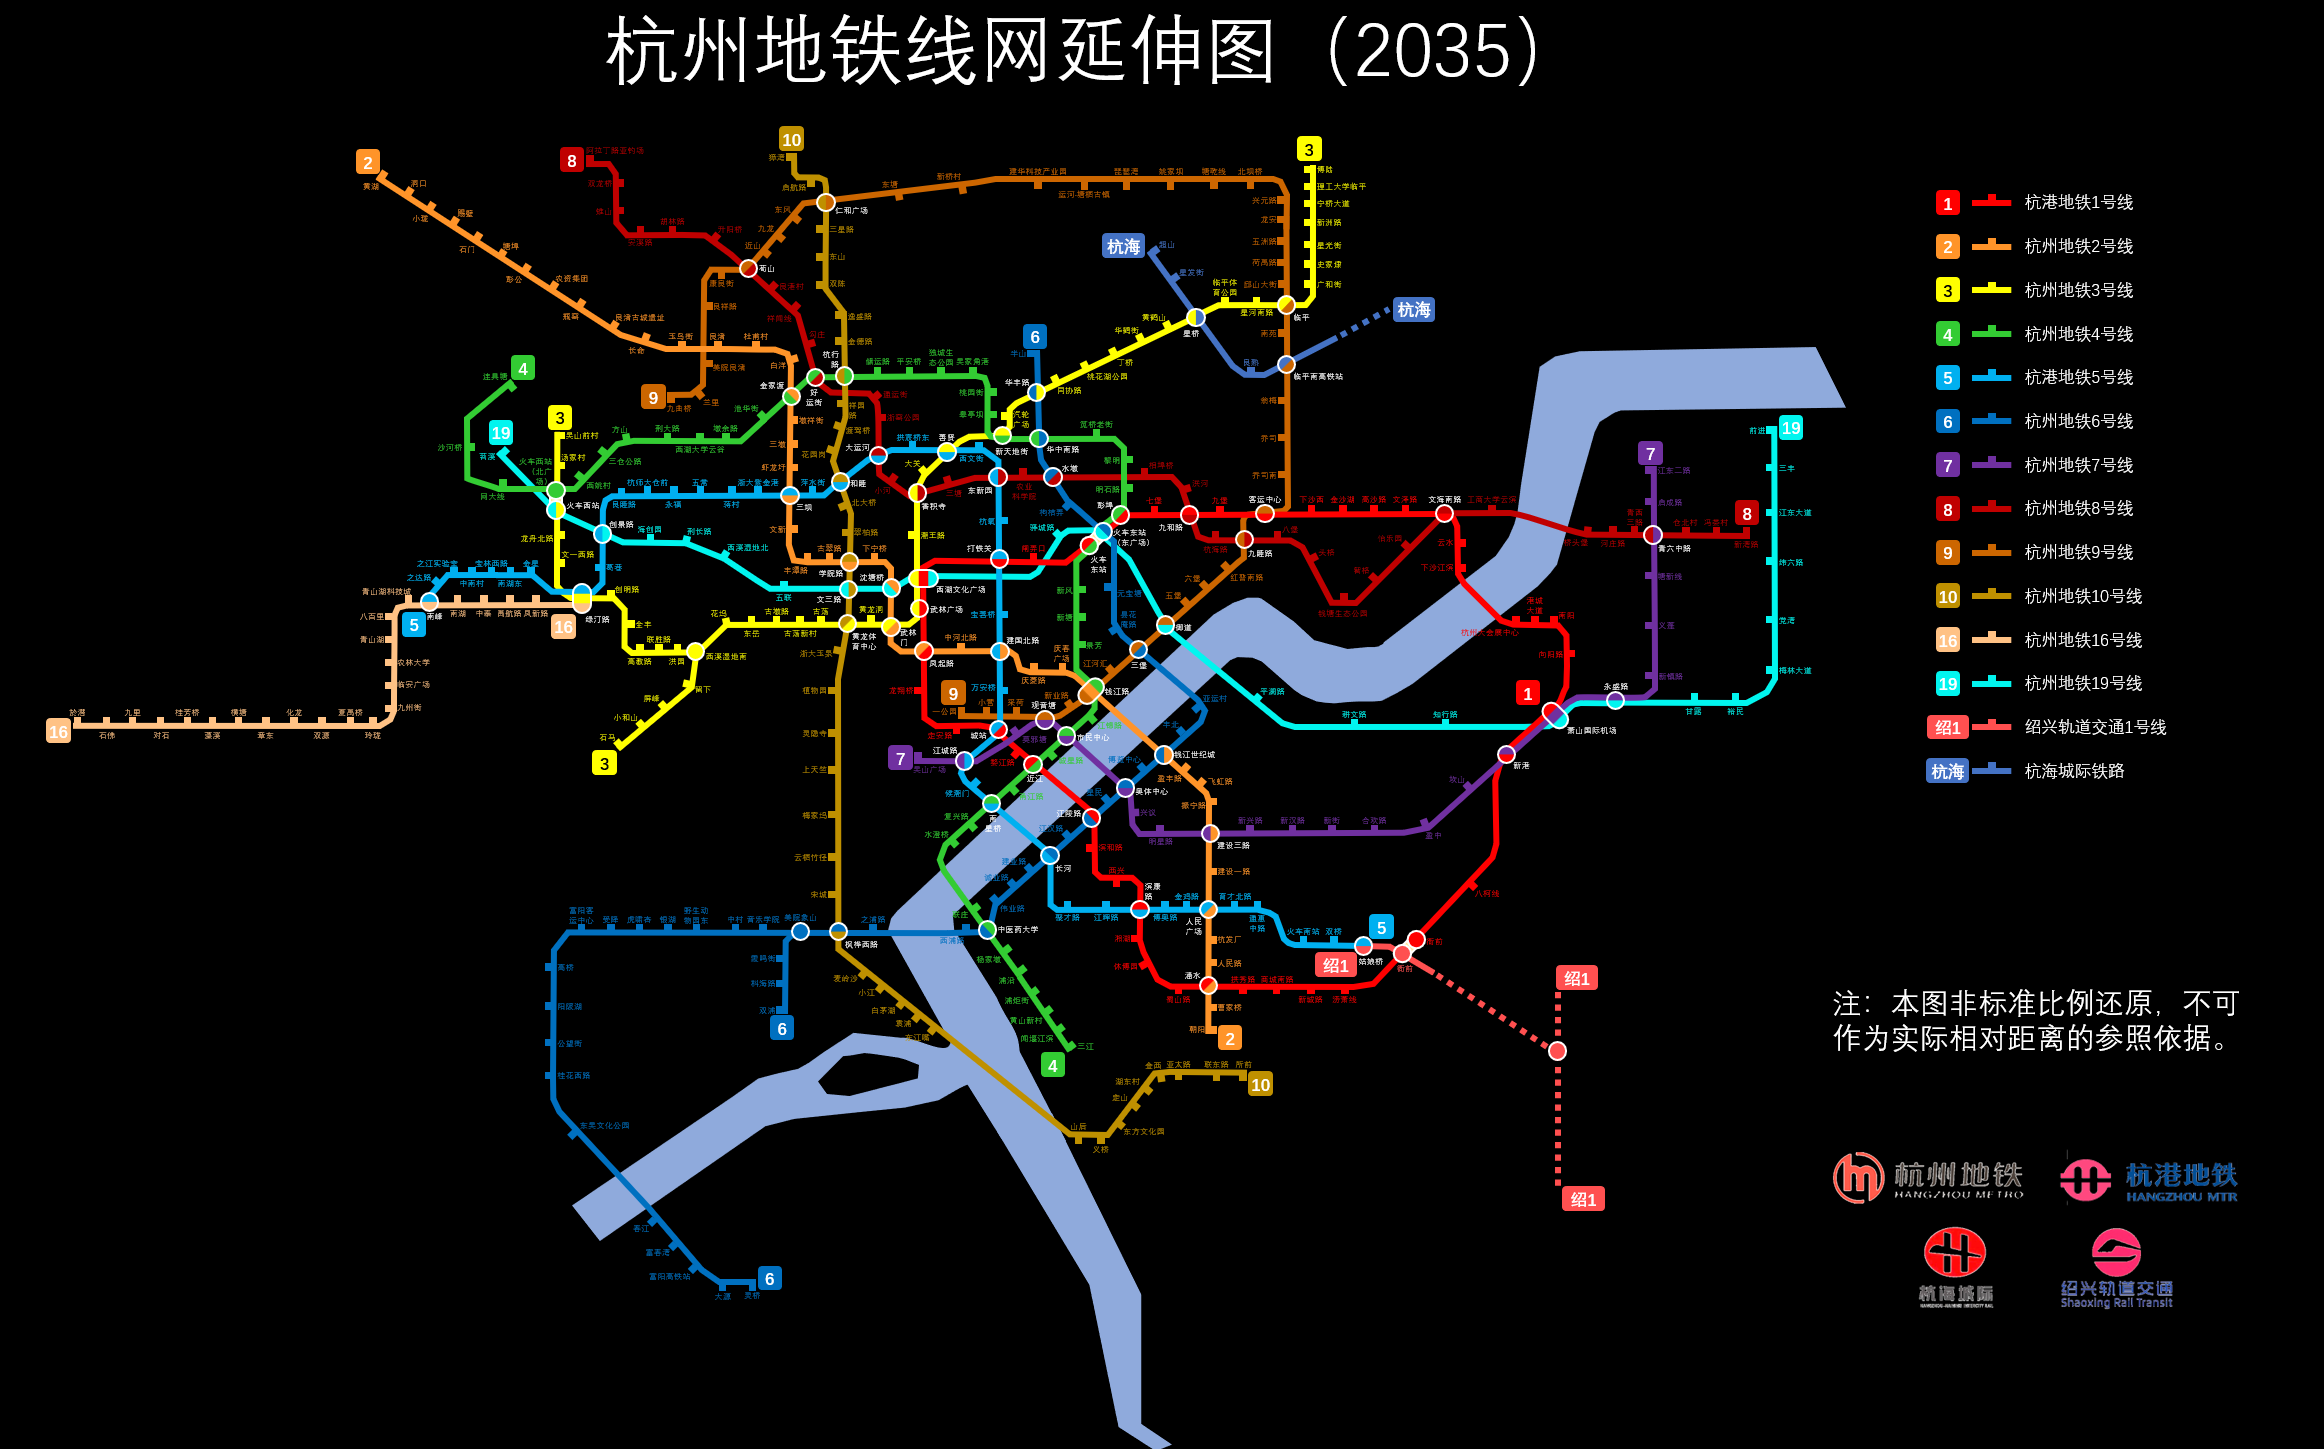 【自制pov】【未来地铁】杭州地铁线路未来构想系列(全程左侧pov)